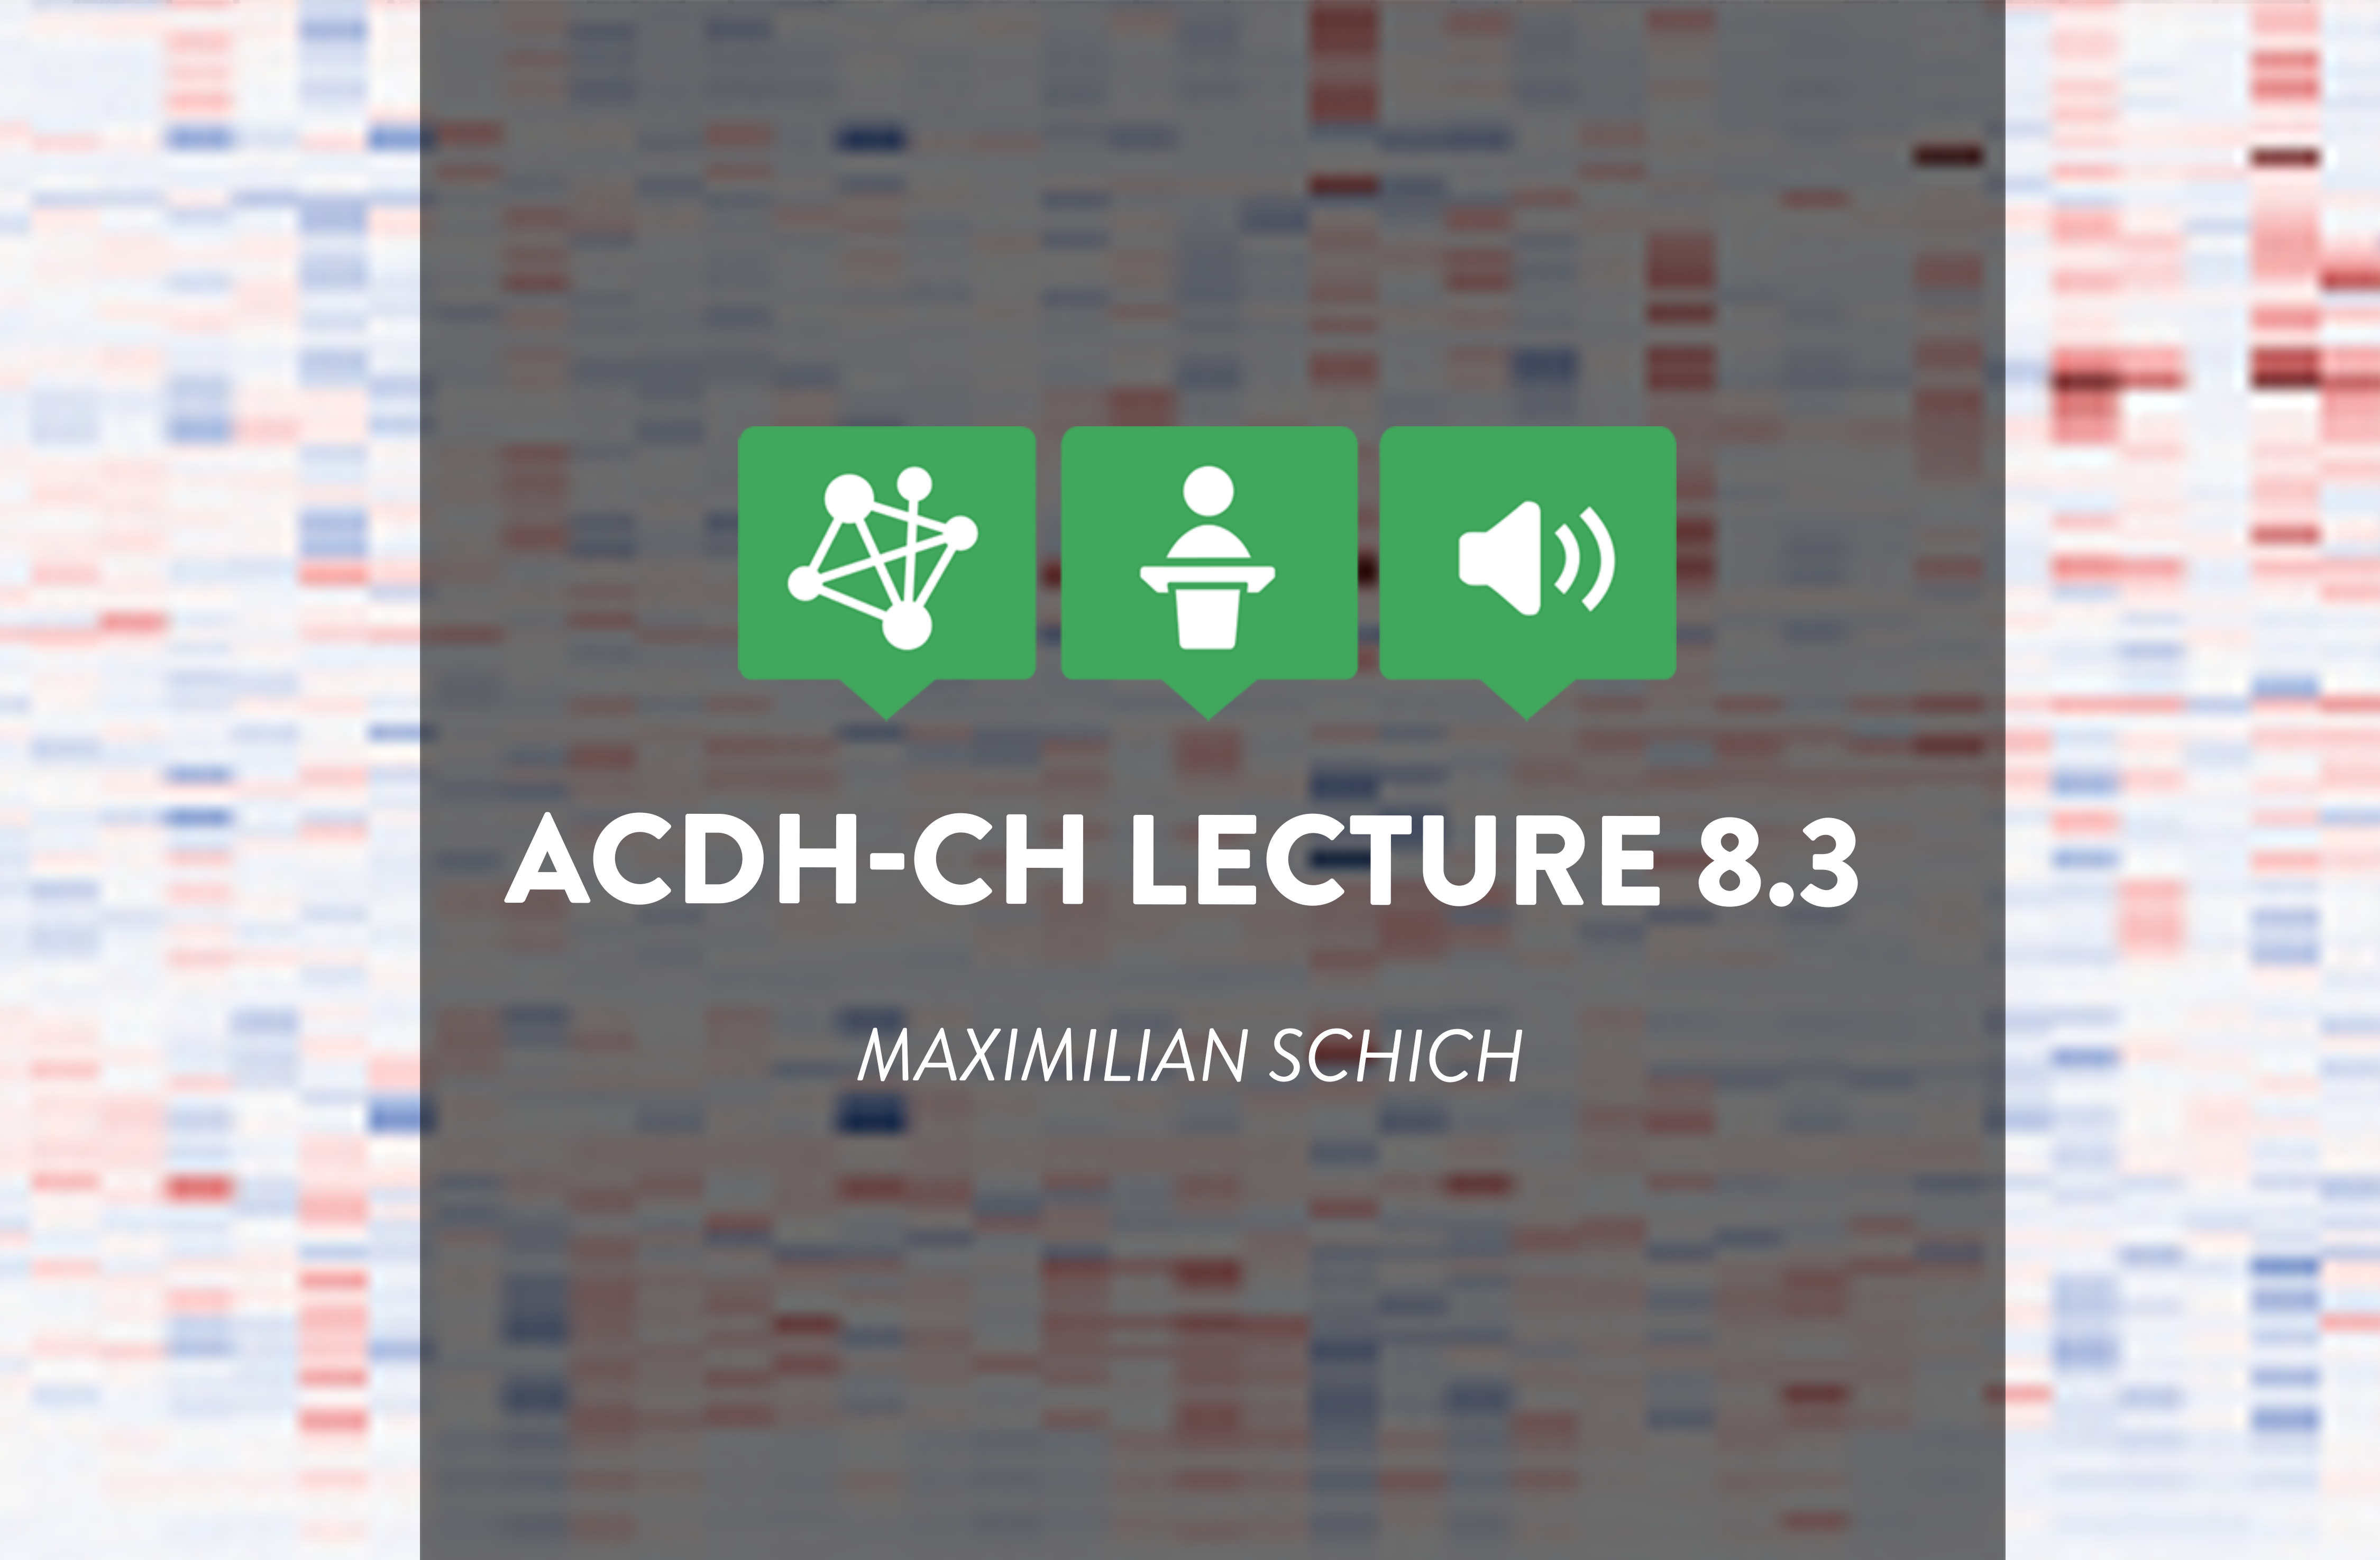 ACDH-CH Lecture 8.3 – Kulturanalyse als integrierte Geistes- und Naturwissenschaft